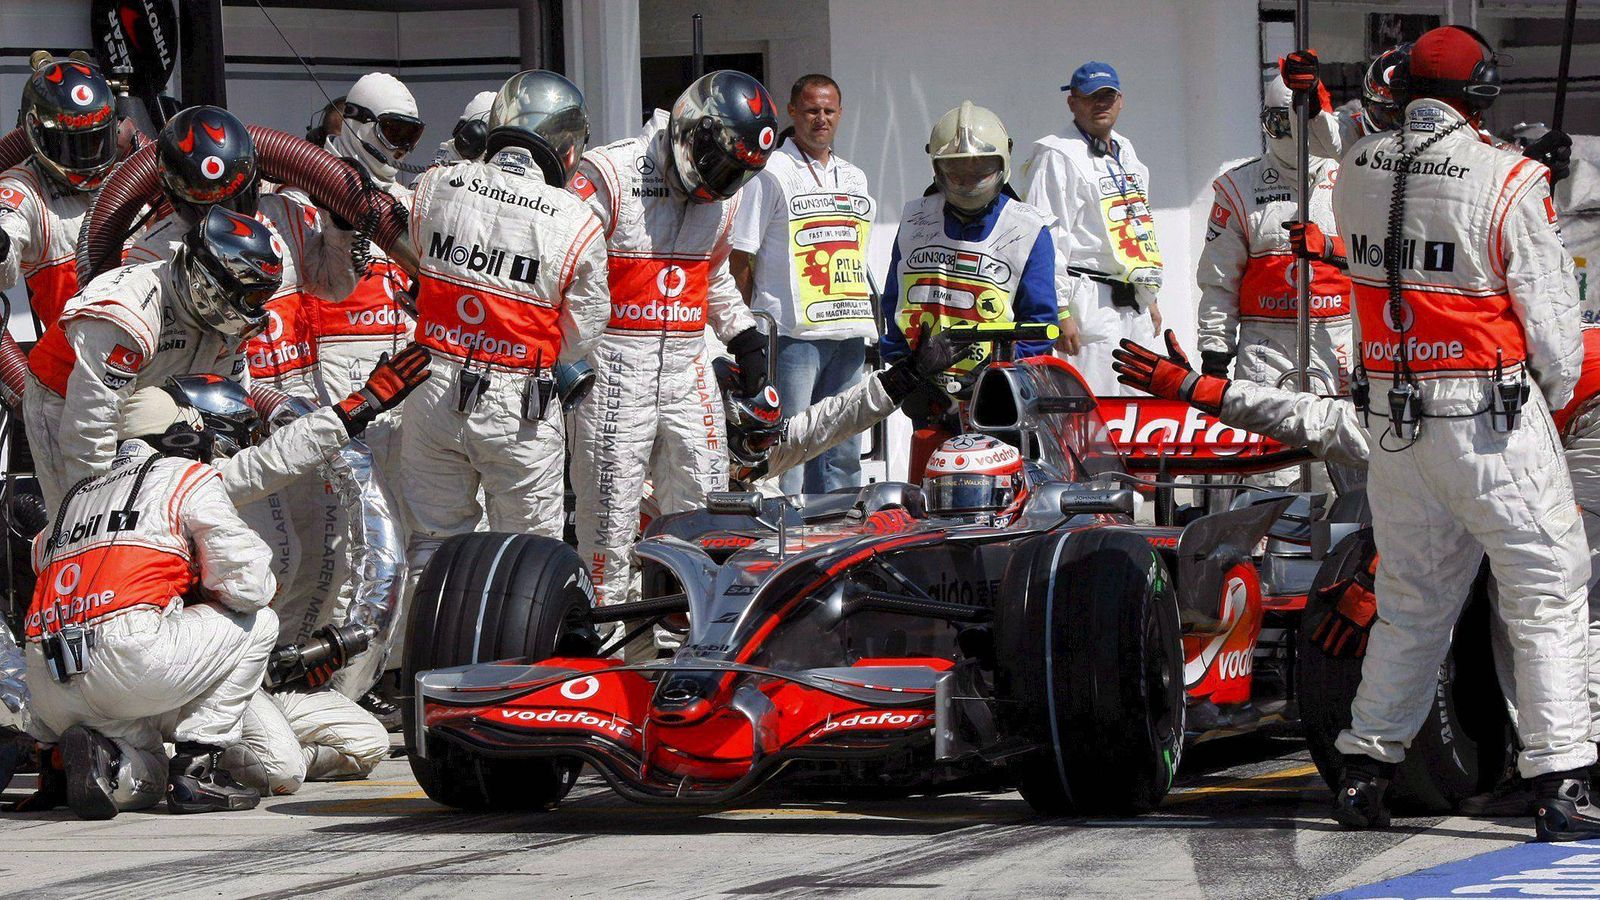 Foto: Lewis Hamilton, el piloto favorito de los fans, con McLaren en 2008 cuando todavía había repostajes (Efe)